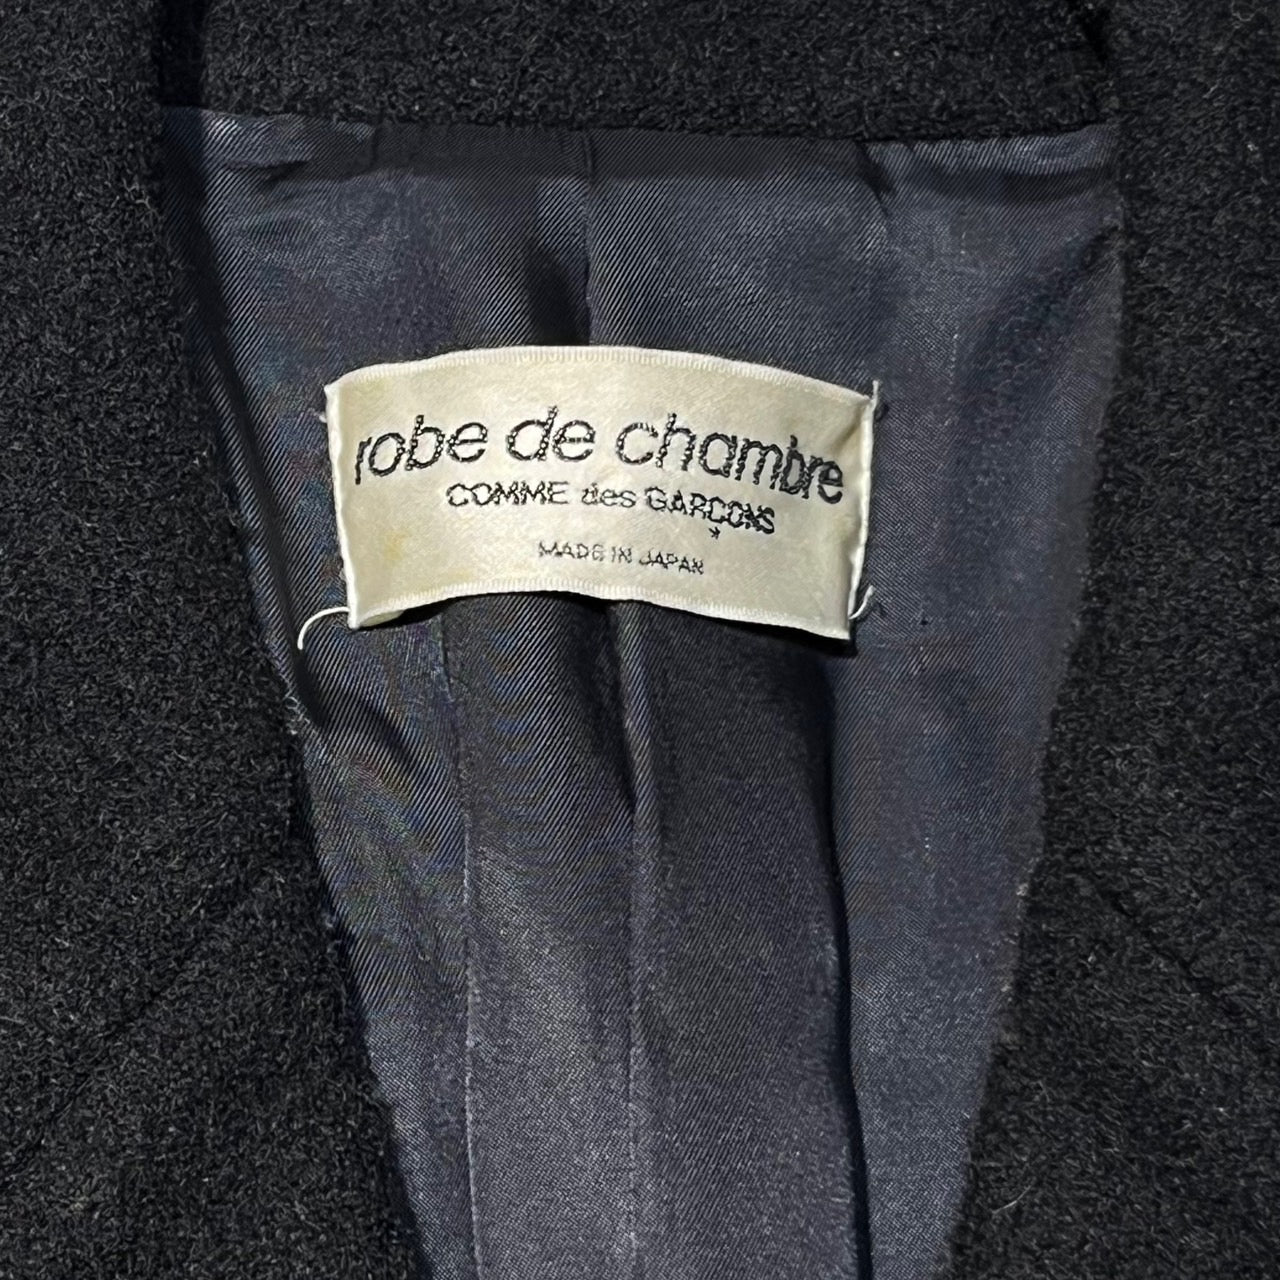 robe de chambre COMME des GARCONS(ローブドシャンブルコムデギャルソン) 90's切替4Bウールコート  RC-040030 表記なし(M～L程度) ブラック AD1995